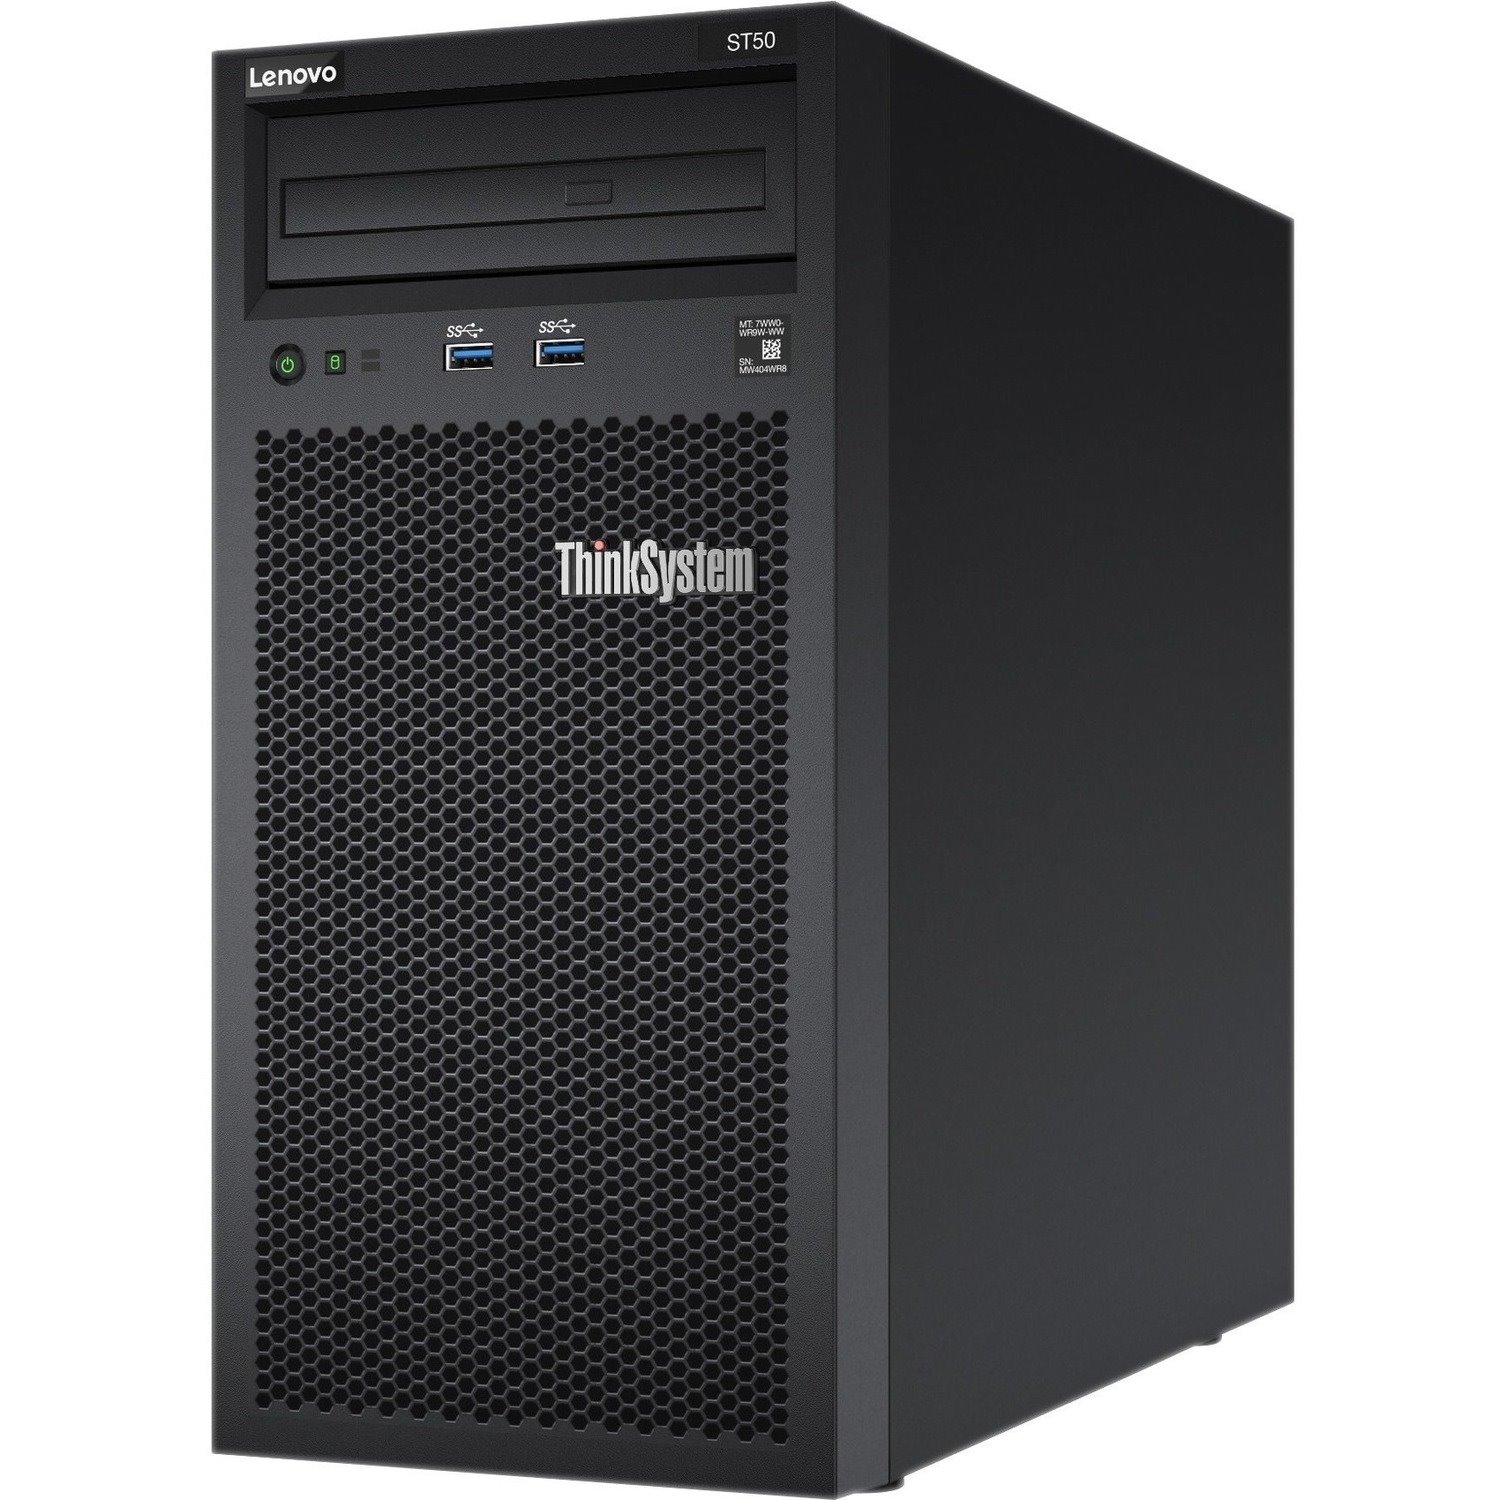 Lenovo ThinkSystem ST50 7Y48A04FEA 4U Tower Server - 1 x Intel Xeon E-2224G 3.50 GHz - 8 GB RAM - 2 TB HDD - (2 x 1TB) HDD Configuration - Serial ATA/600 Controller